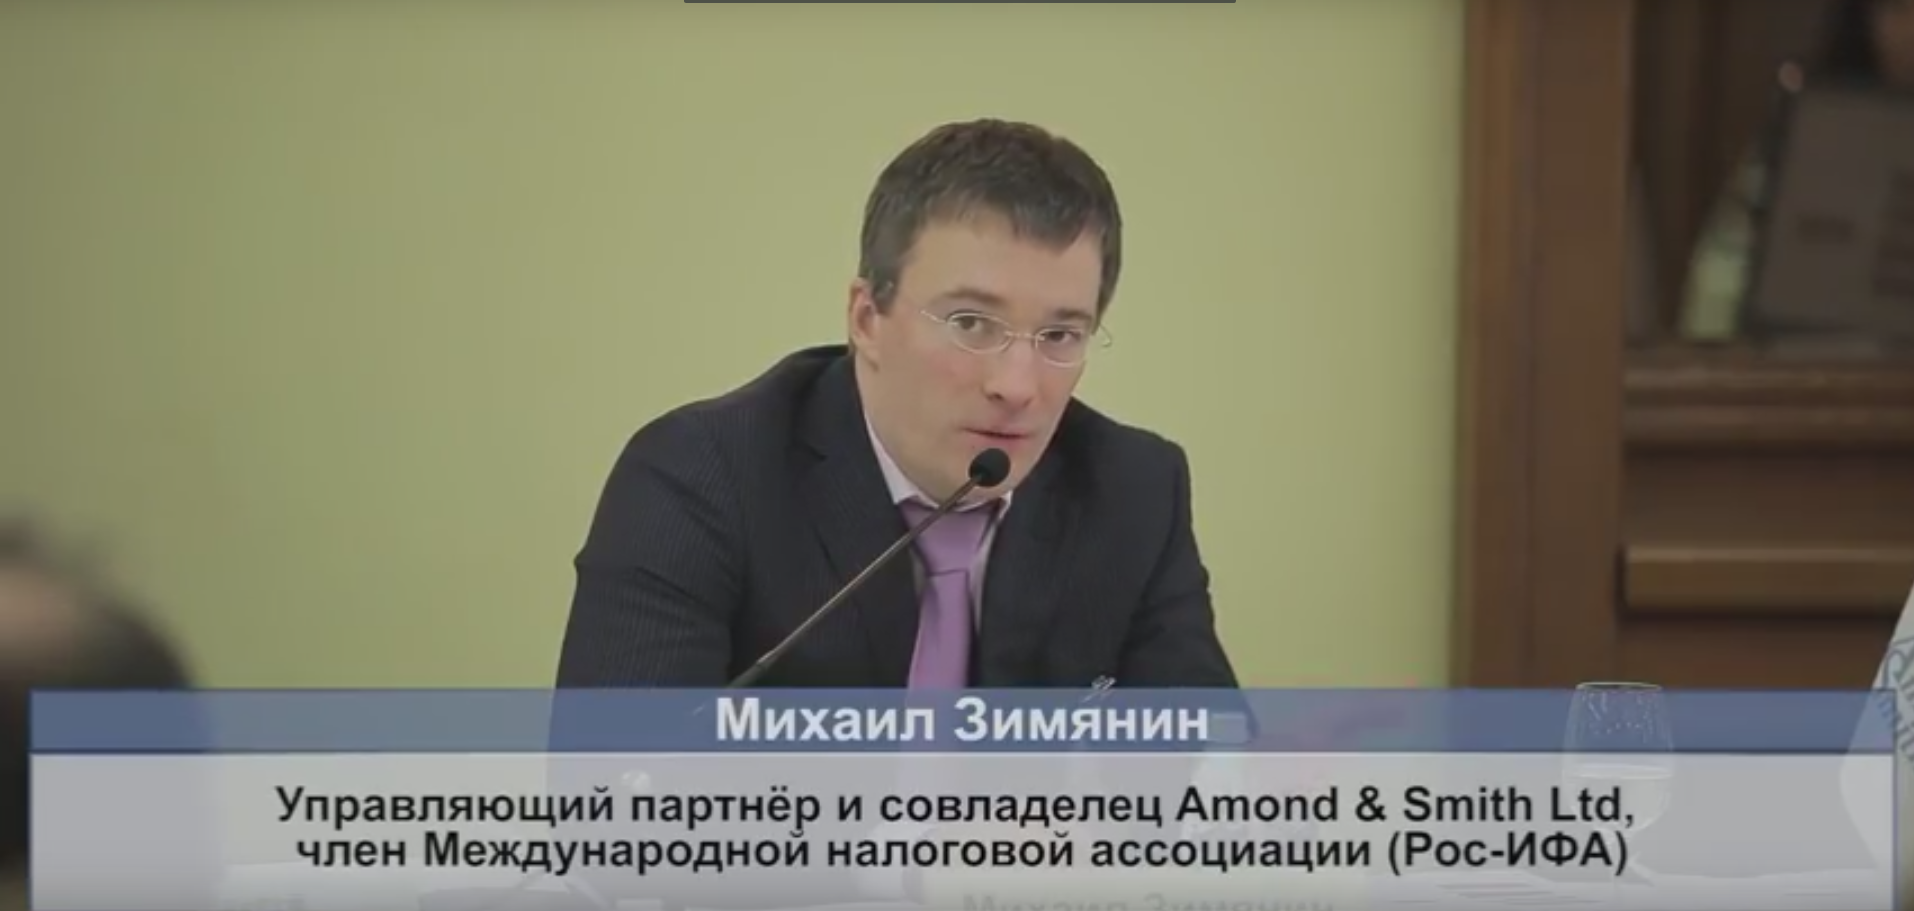 (Видео) Михаил Зимянин прокомментировал налоговый скандал с Apple на радио «Эхо Москвы»